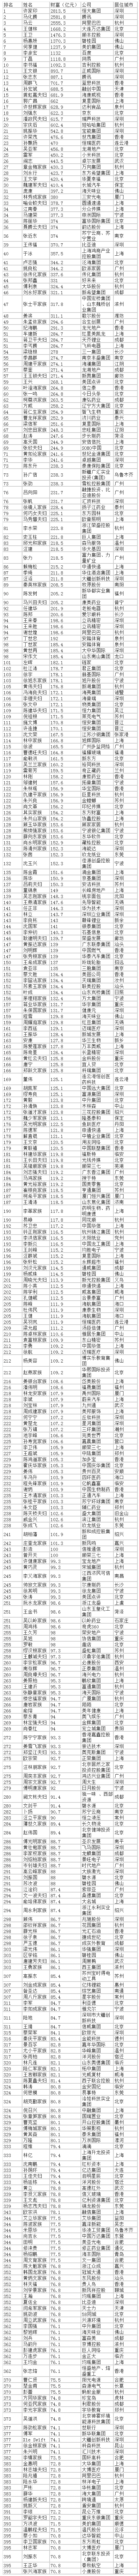 福布斯中國富豪榜TOP400公布 財富格局發生驚人變化